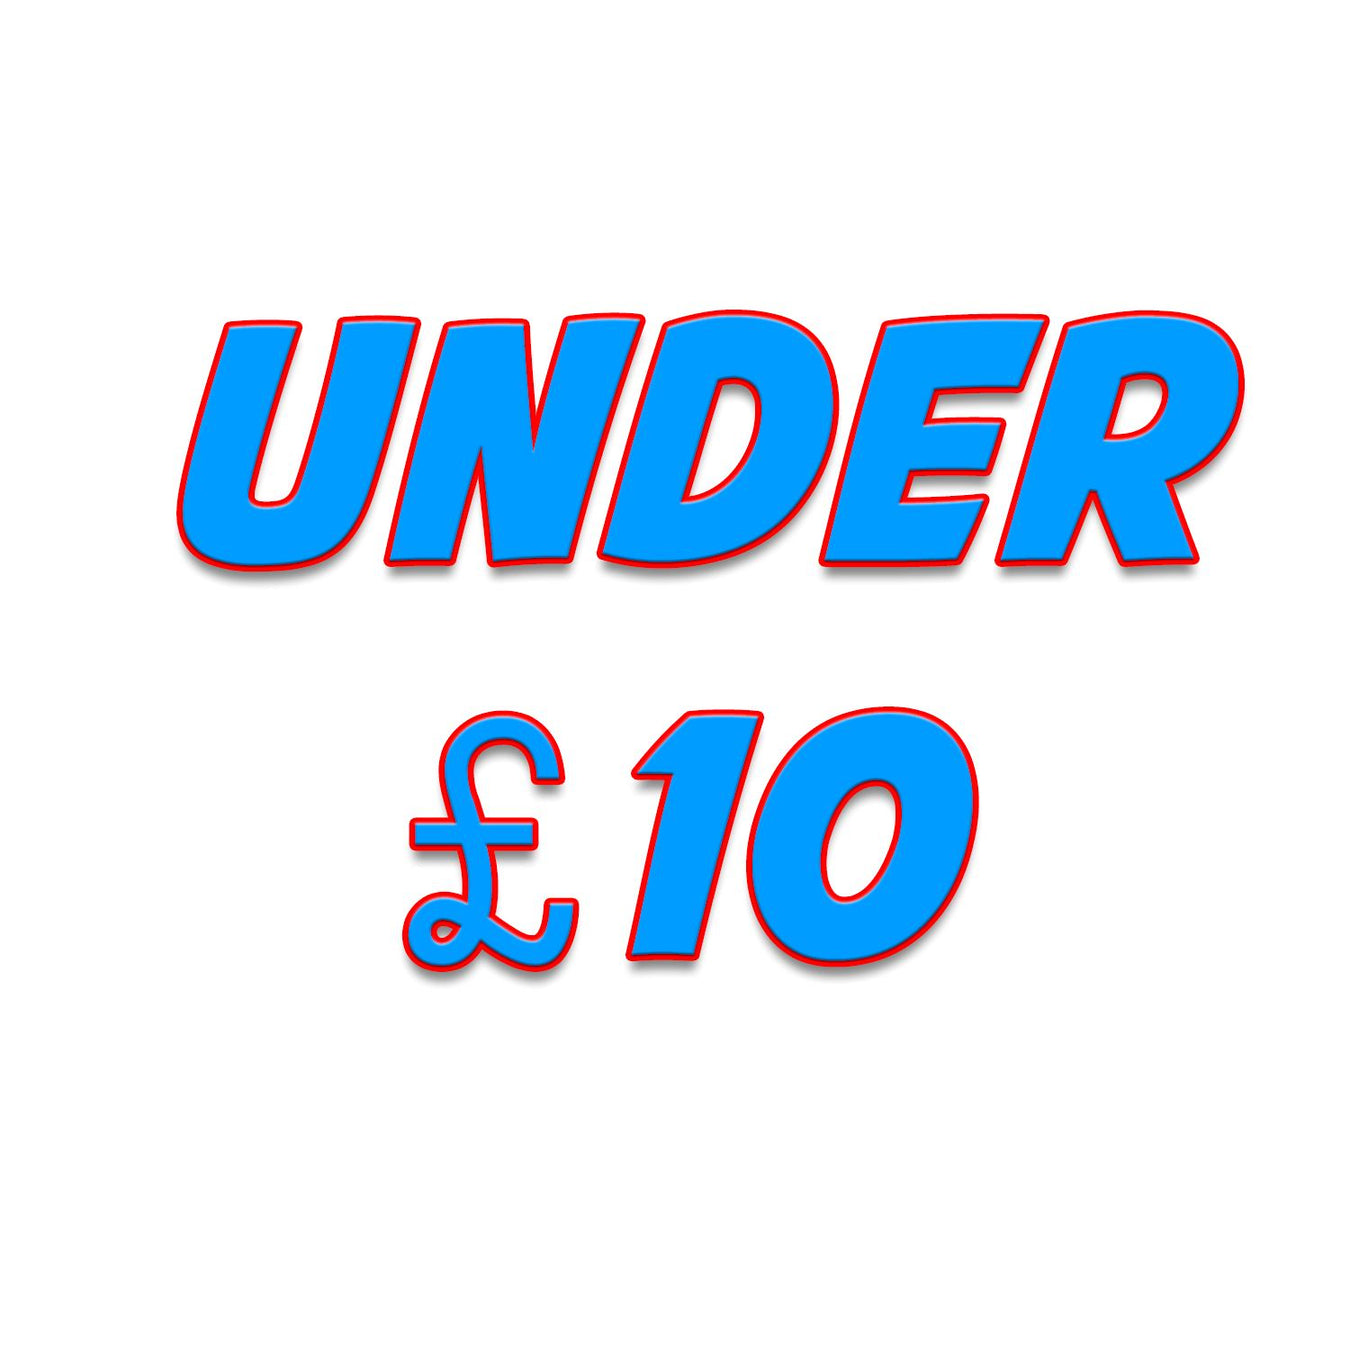 Under £10